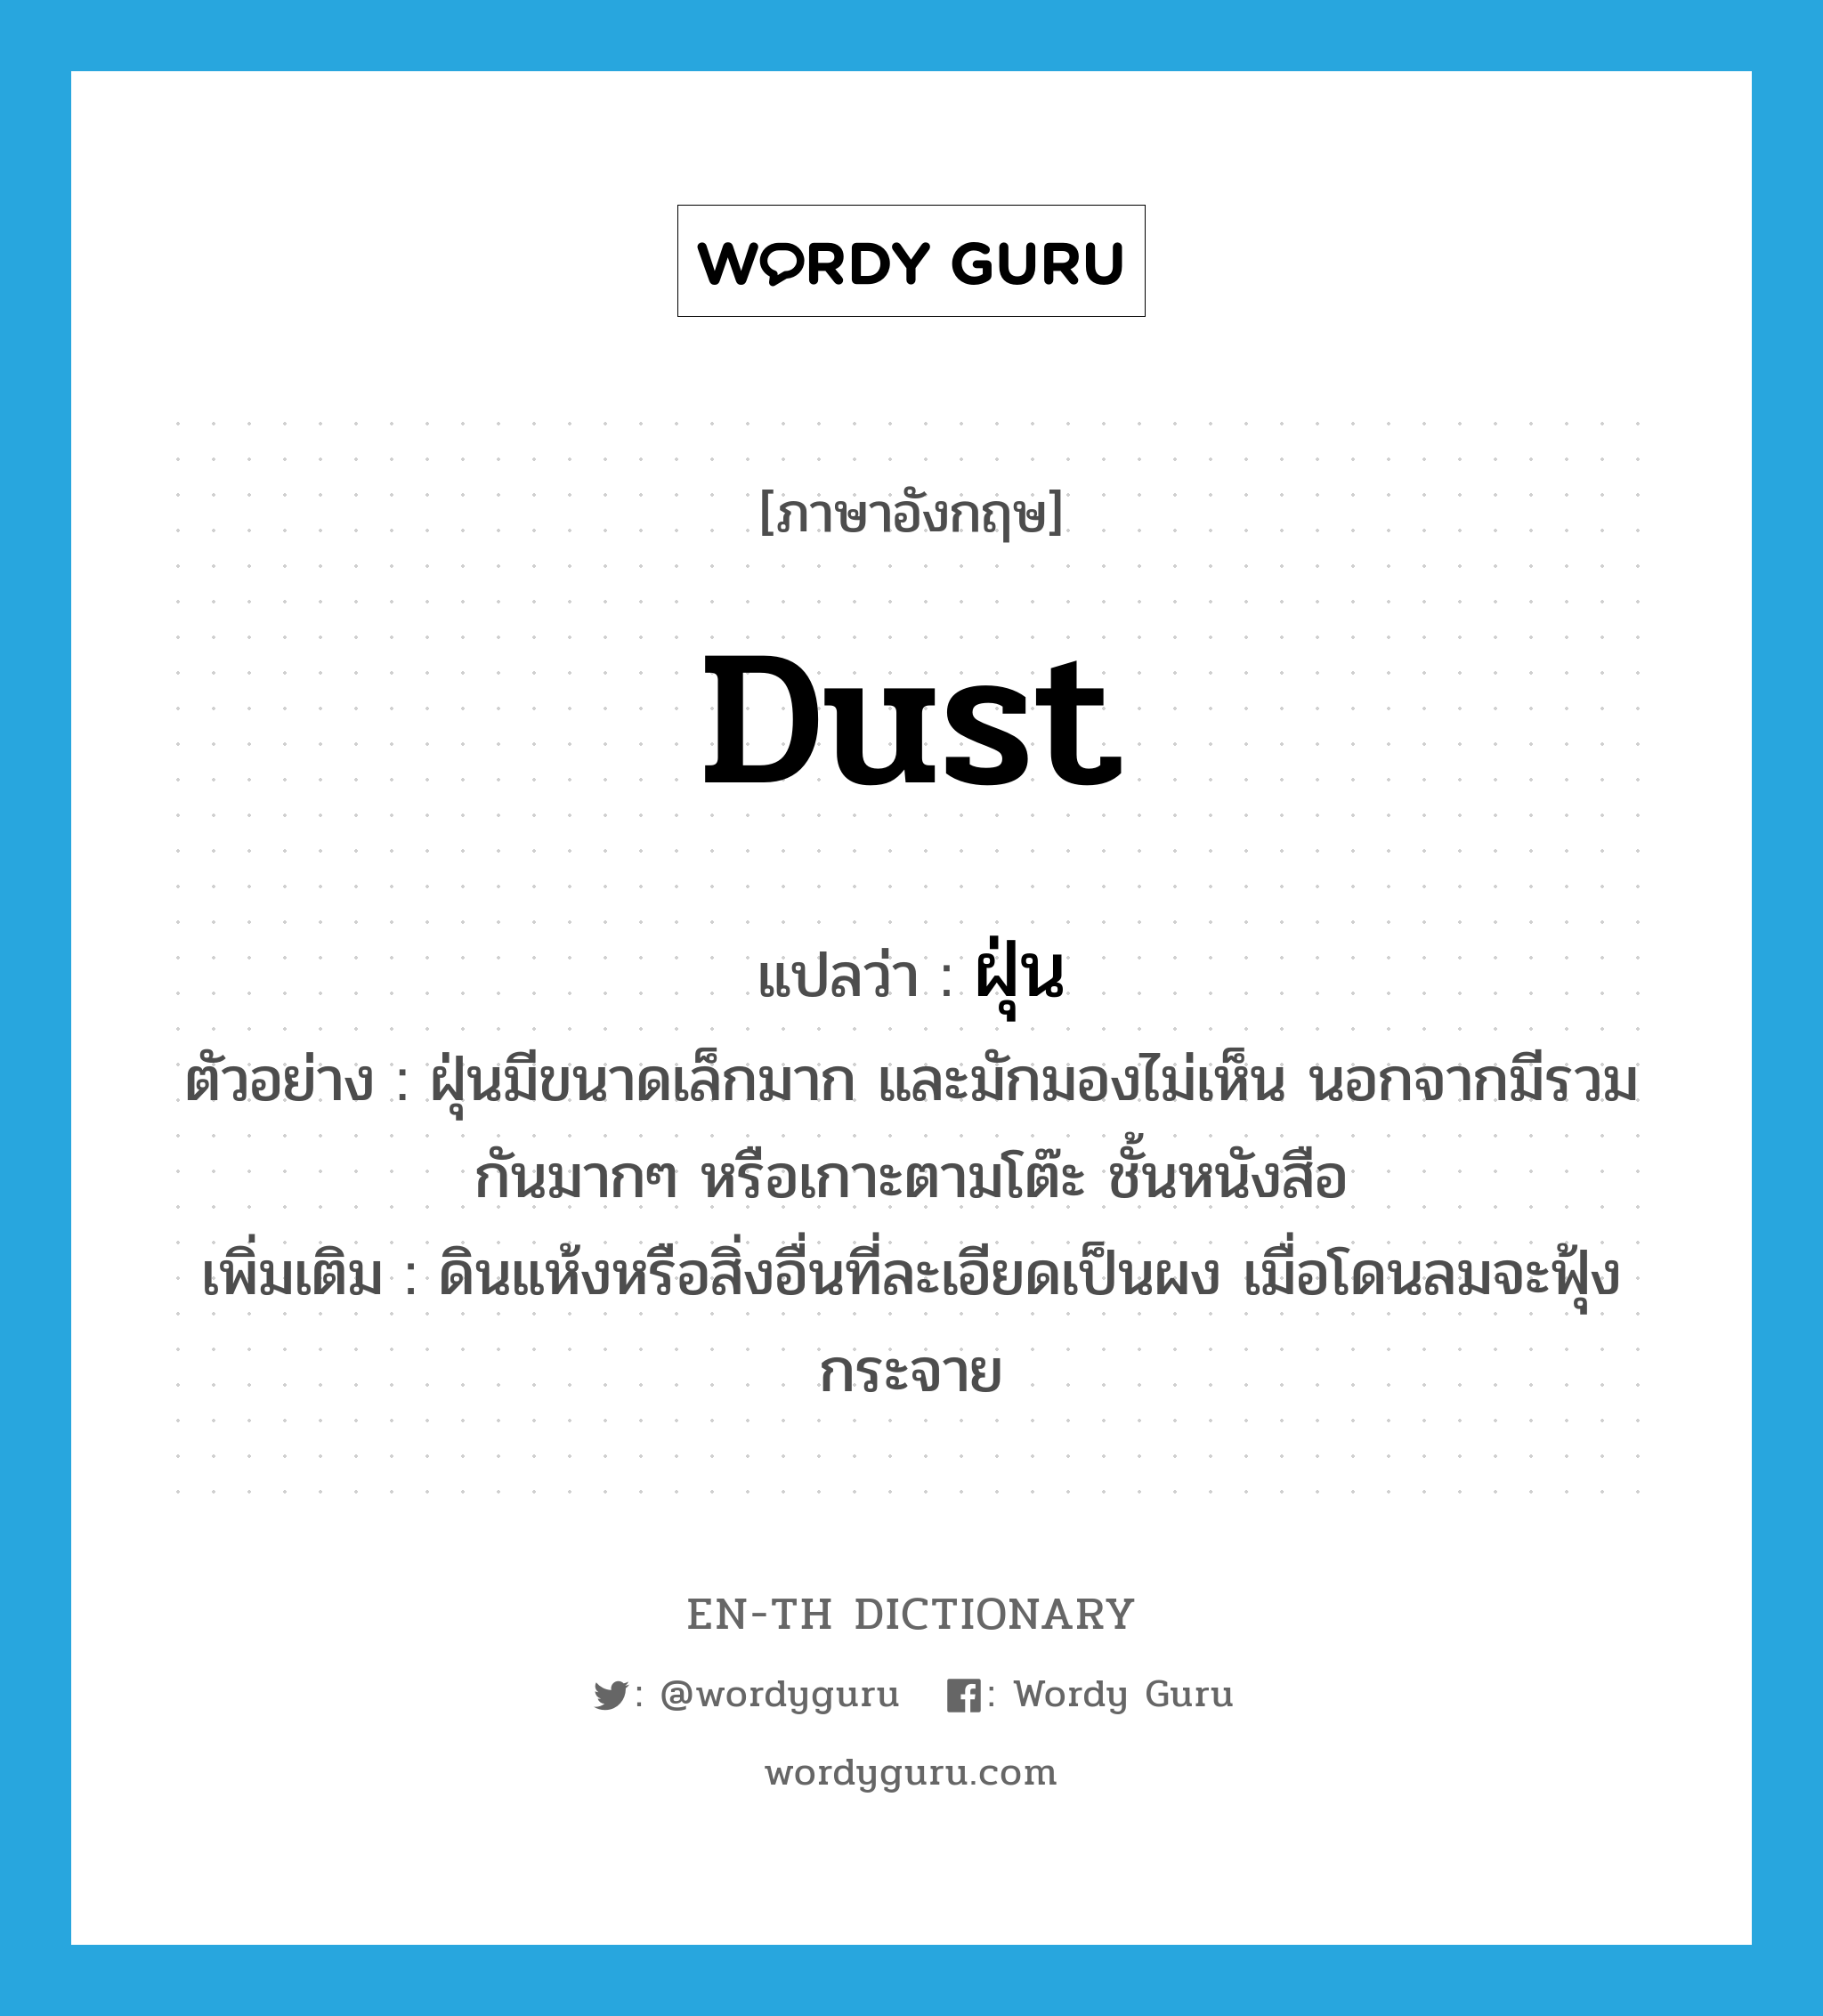 dust แปลว่า?, คำศัพท์ภาษาอังกฤษ dust แปลว่า ฝุ่น ประเภท N ตัวอย่าง ฝุ่นมีขนาดเล็กมาก และมักมองไม่เห็น นอกจากมีรวมกันมากๆ หรือเกาะตามโต๊ะ ชั้นหนังสือ เพิ่มเติม ดินแห้งหรือสิ่งอื่นที่ละเอียดเป็นผง เมื่อโดนลมจะฟุ้งกระจาย หมวด N